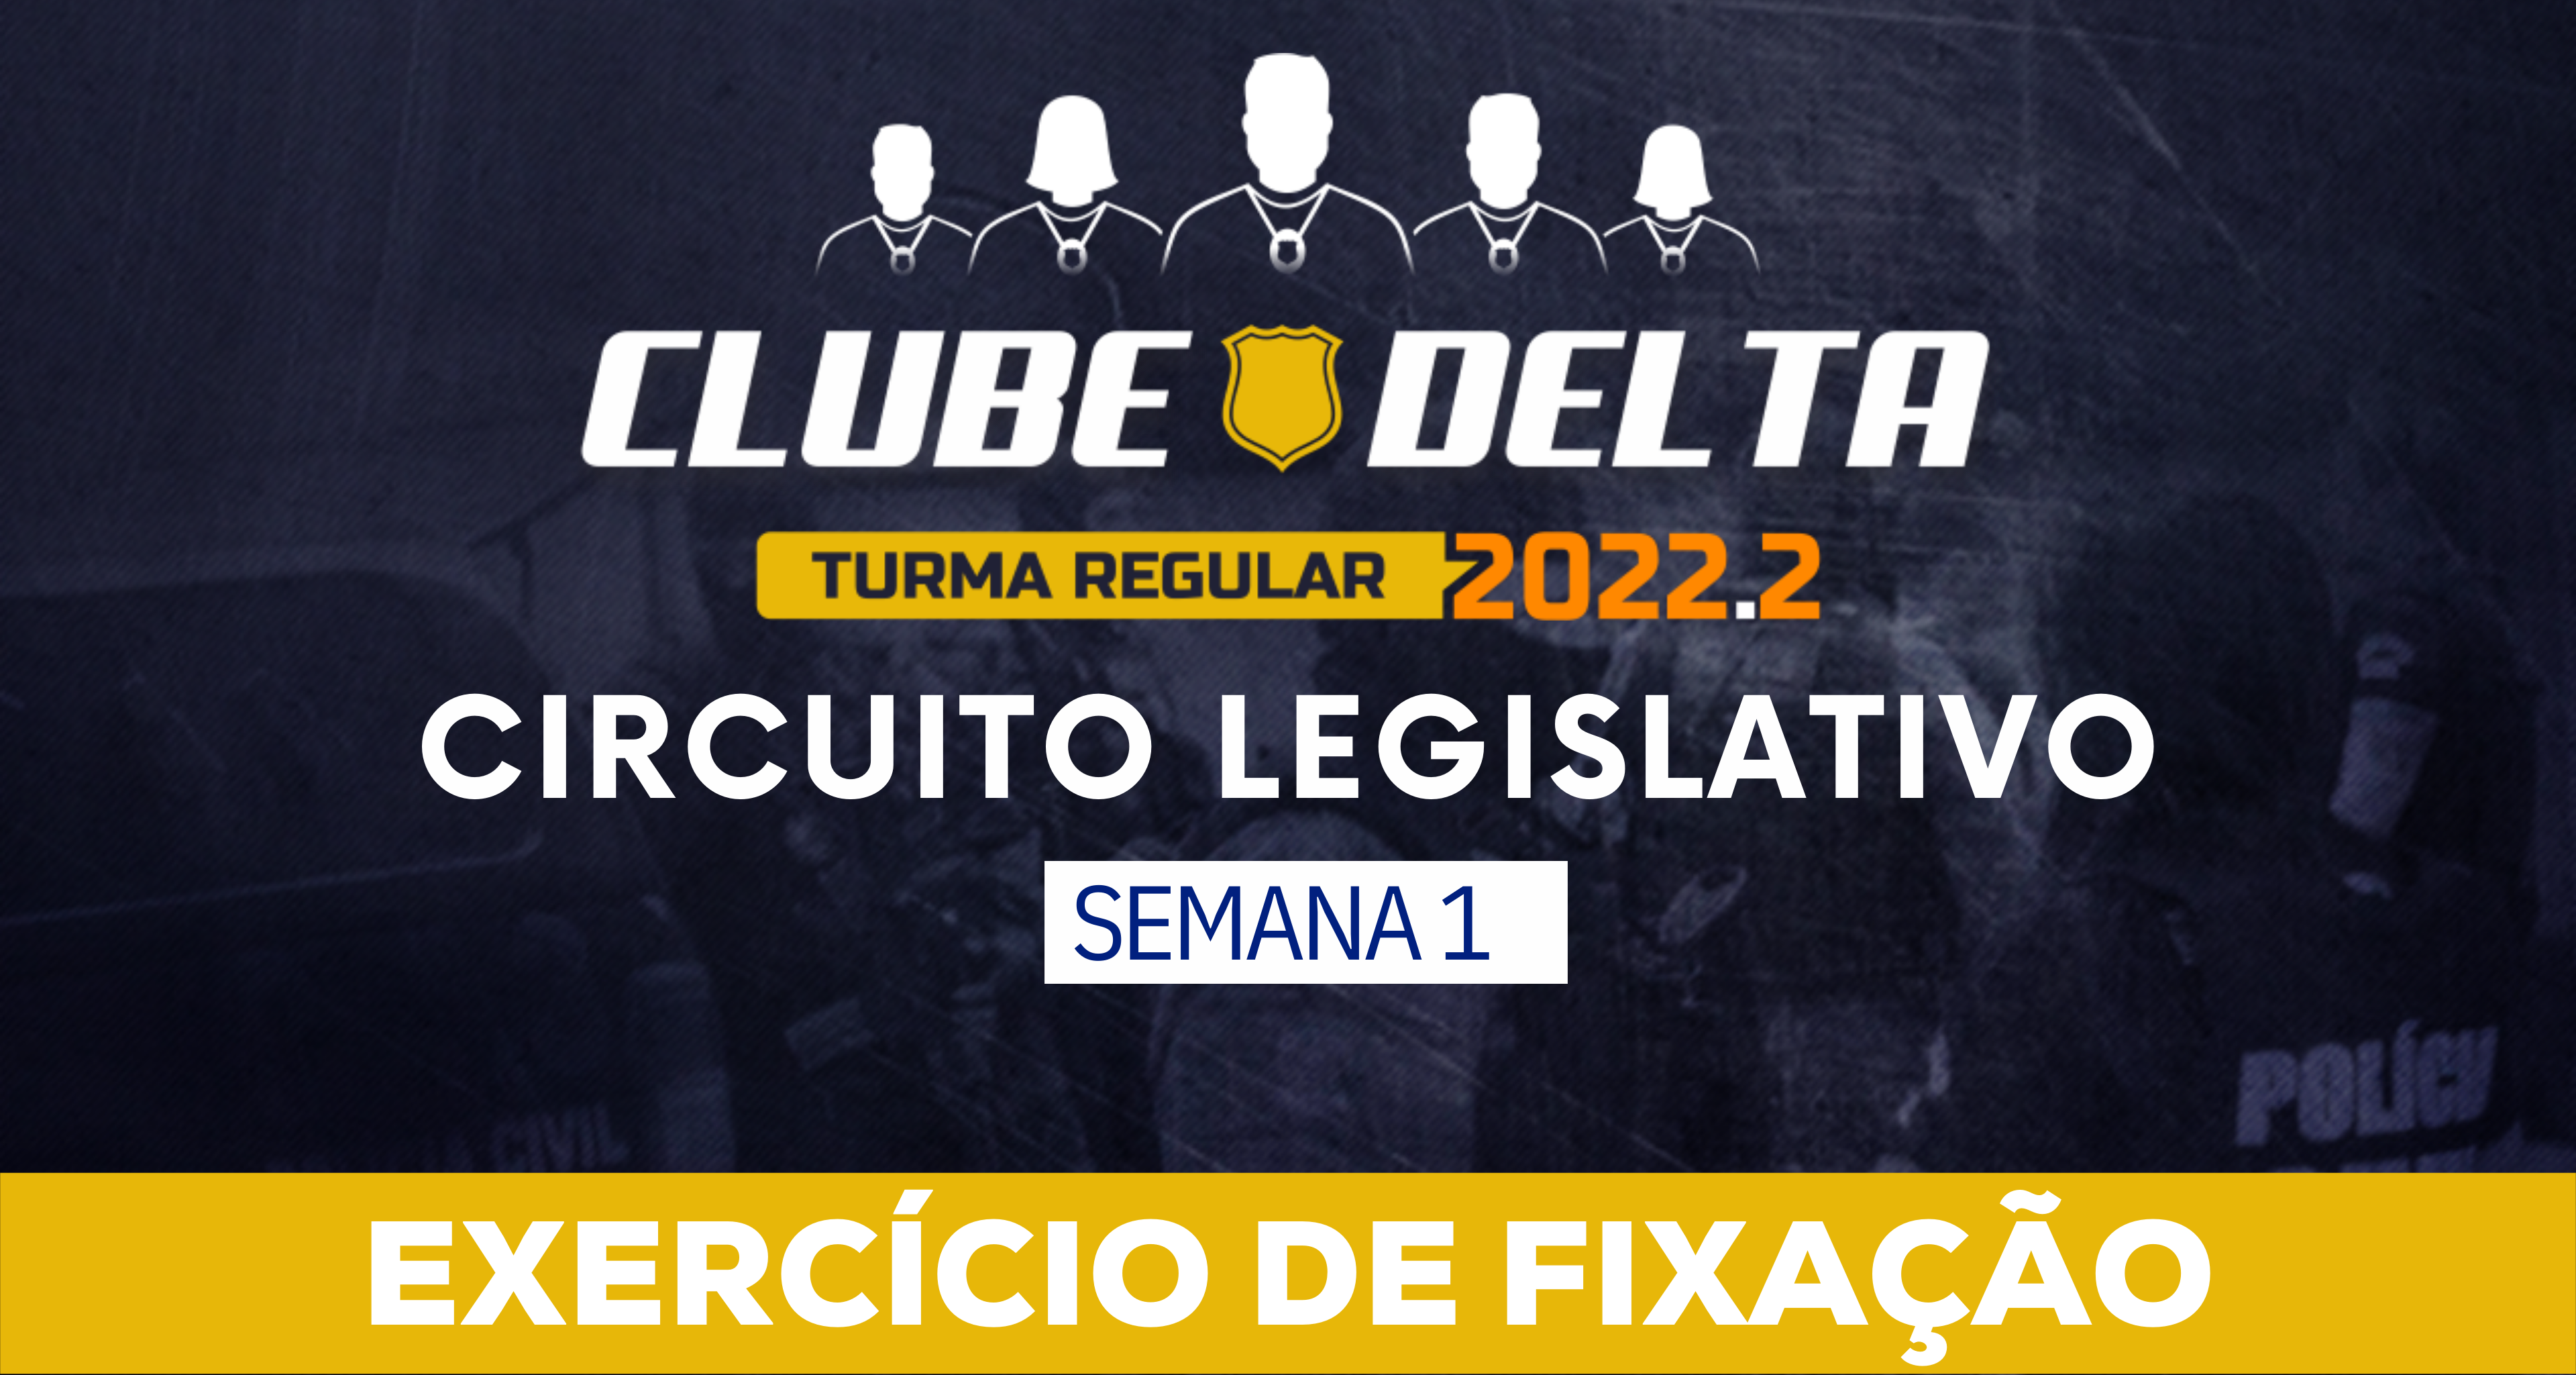 Circuito Legislativo 2022.2 (Clube Delta - Semana 1)